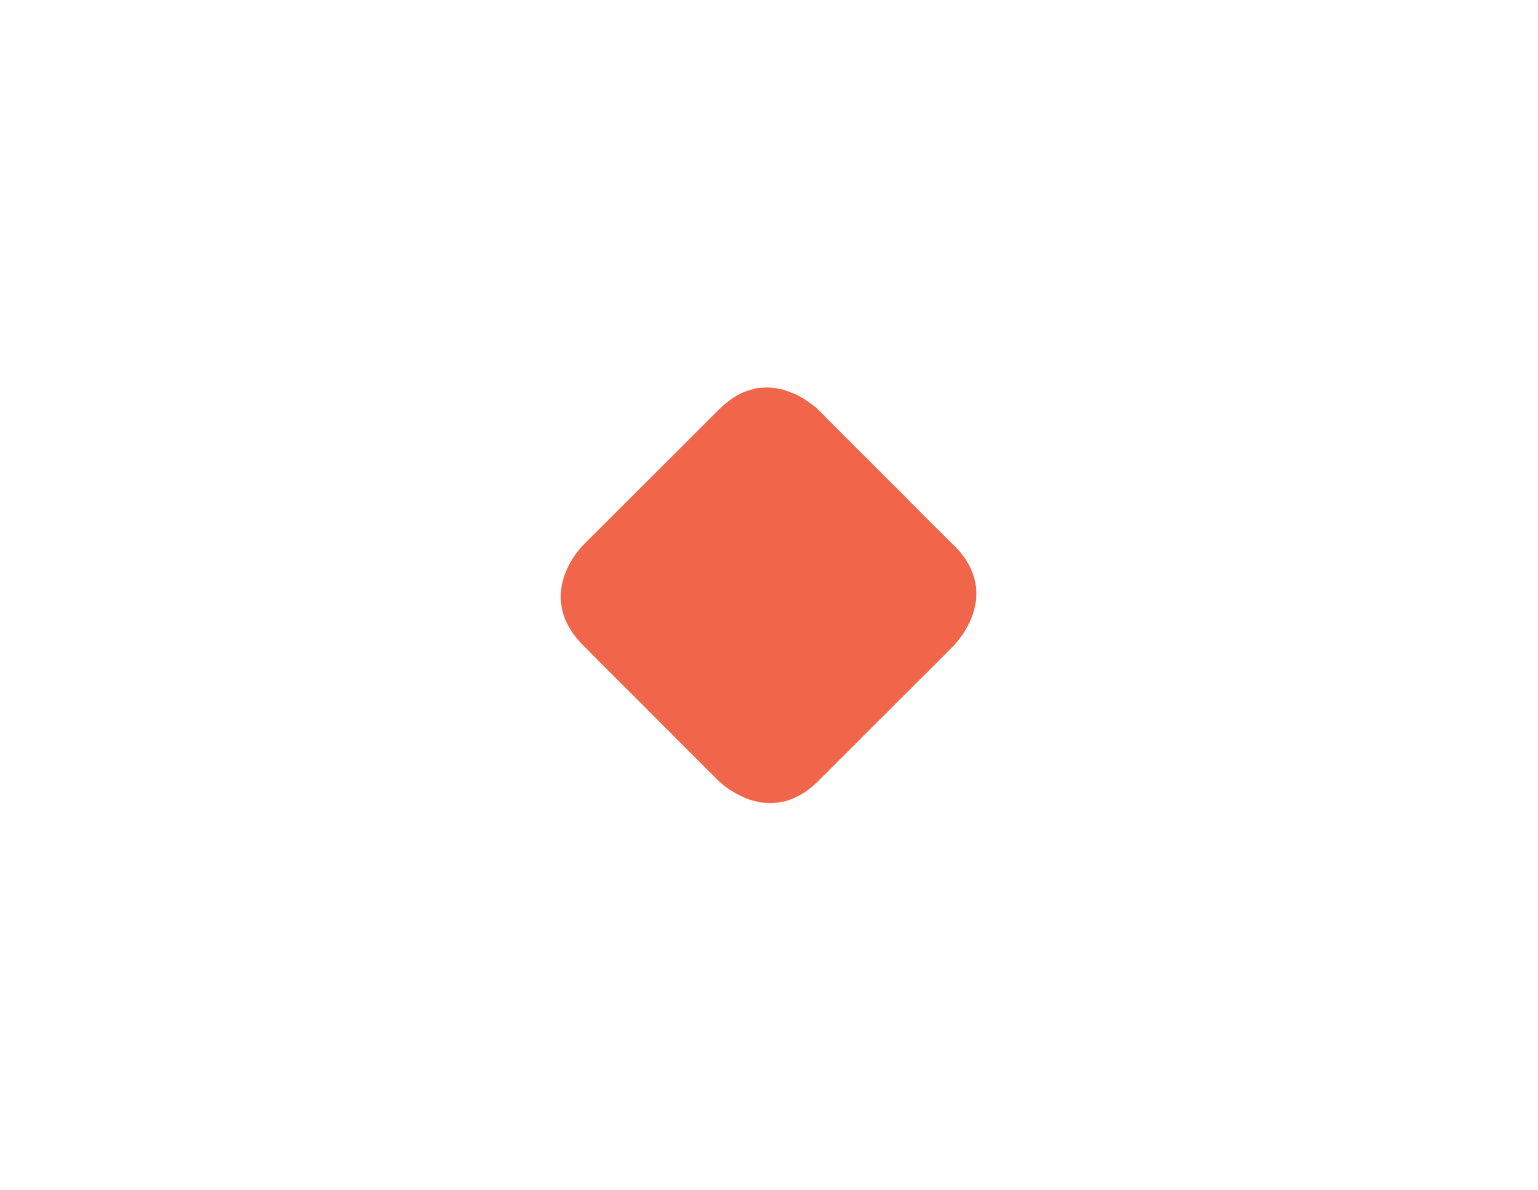 Cimpress logo pour fonds sombres (PNG transparent)